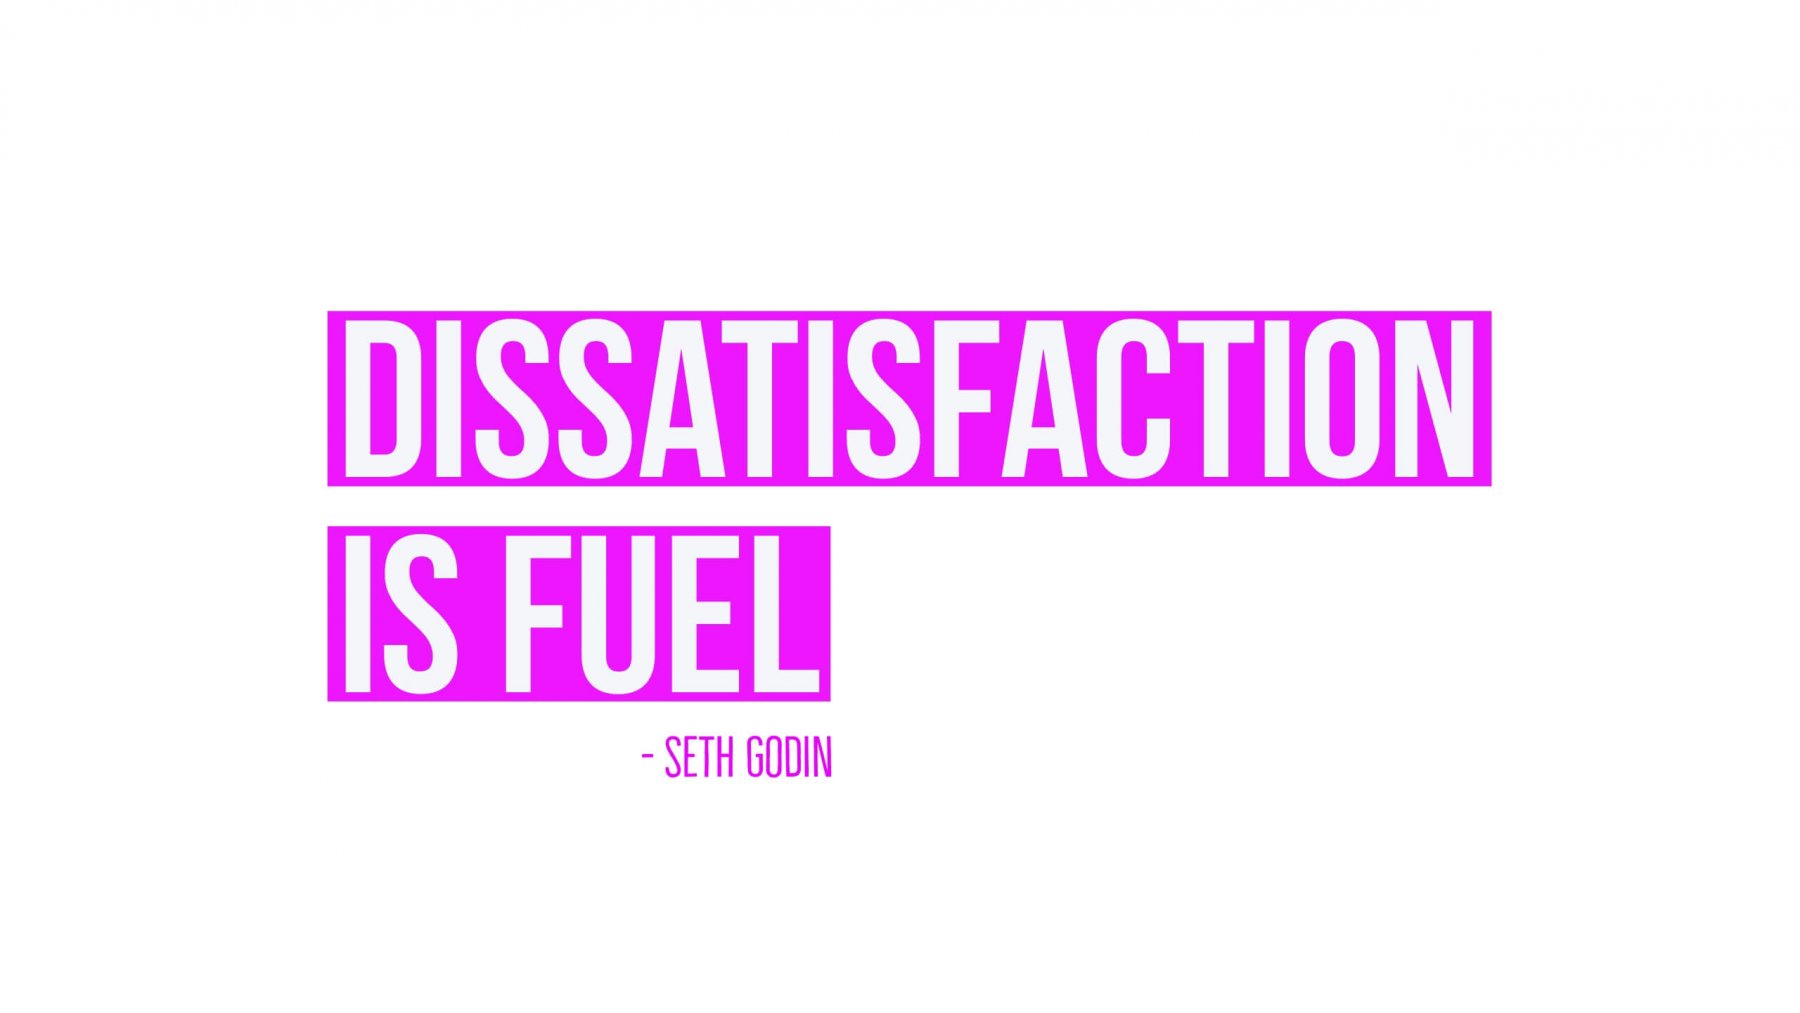 Dissatisfaction is fuel.